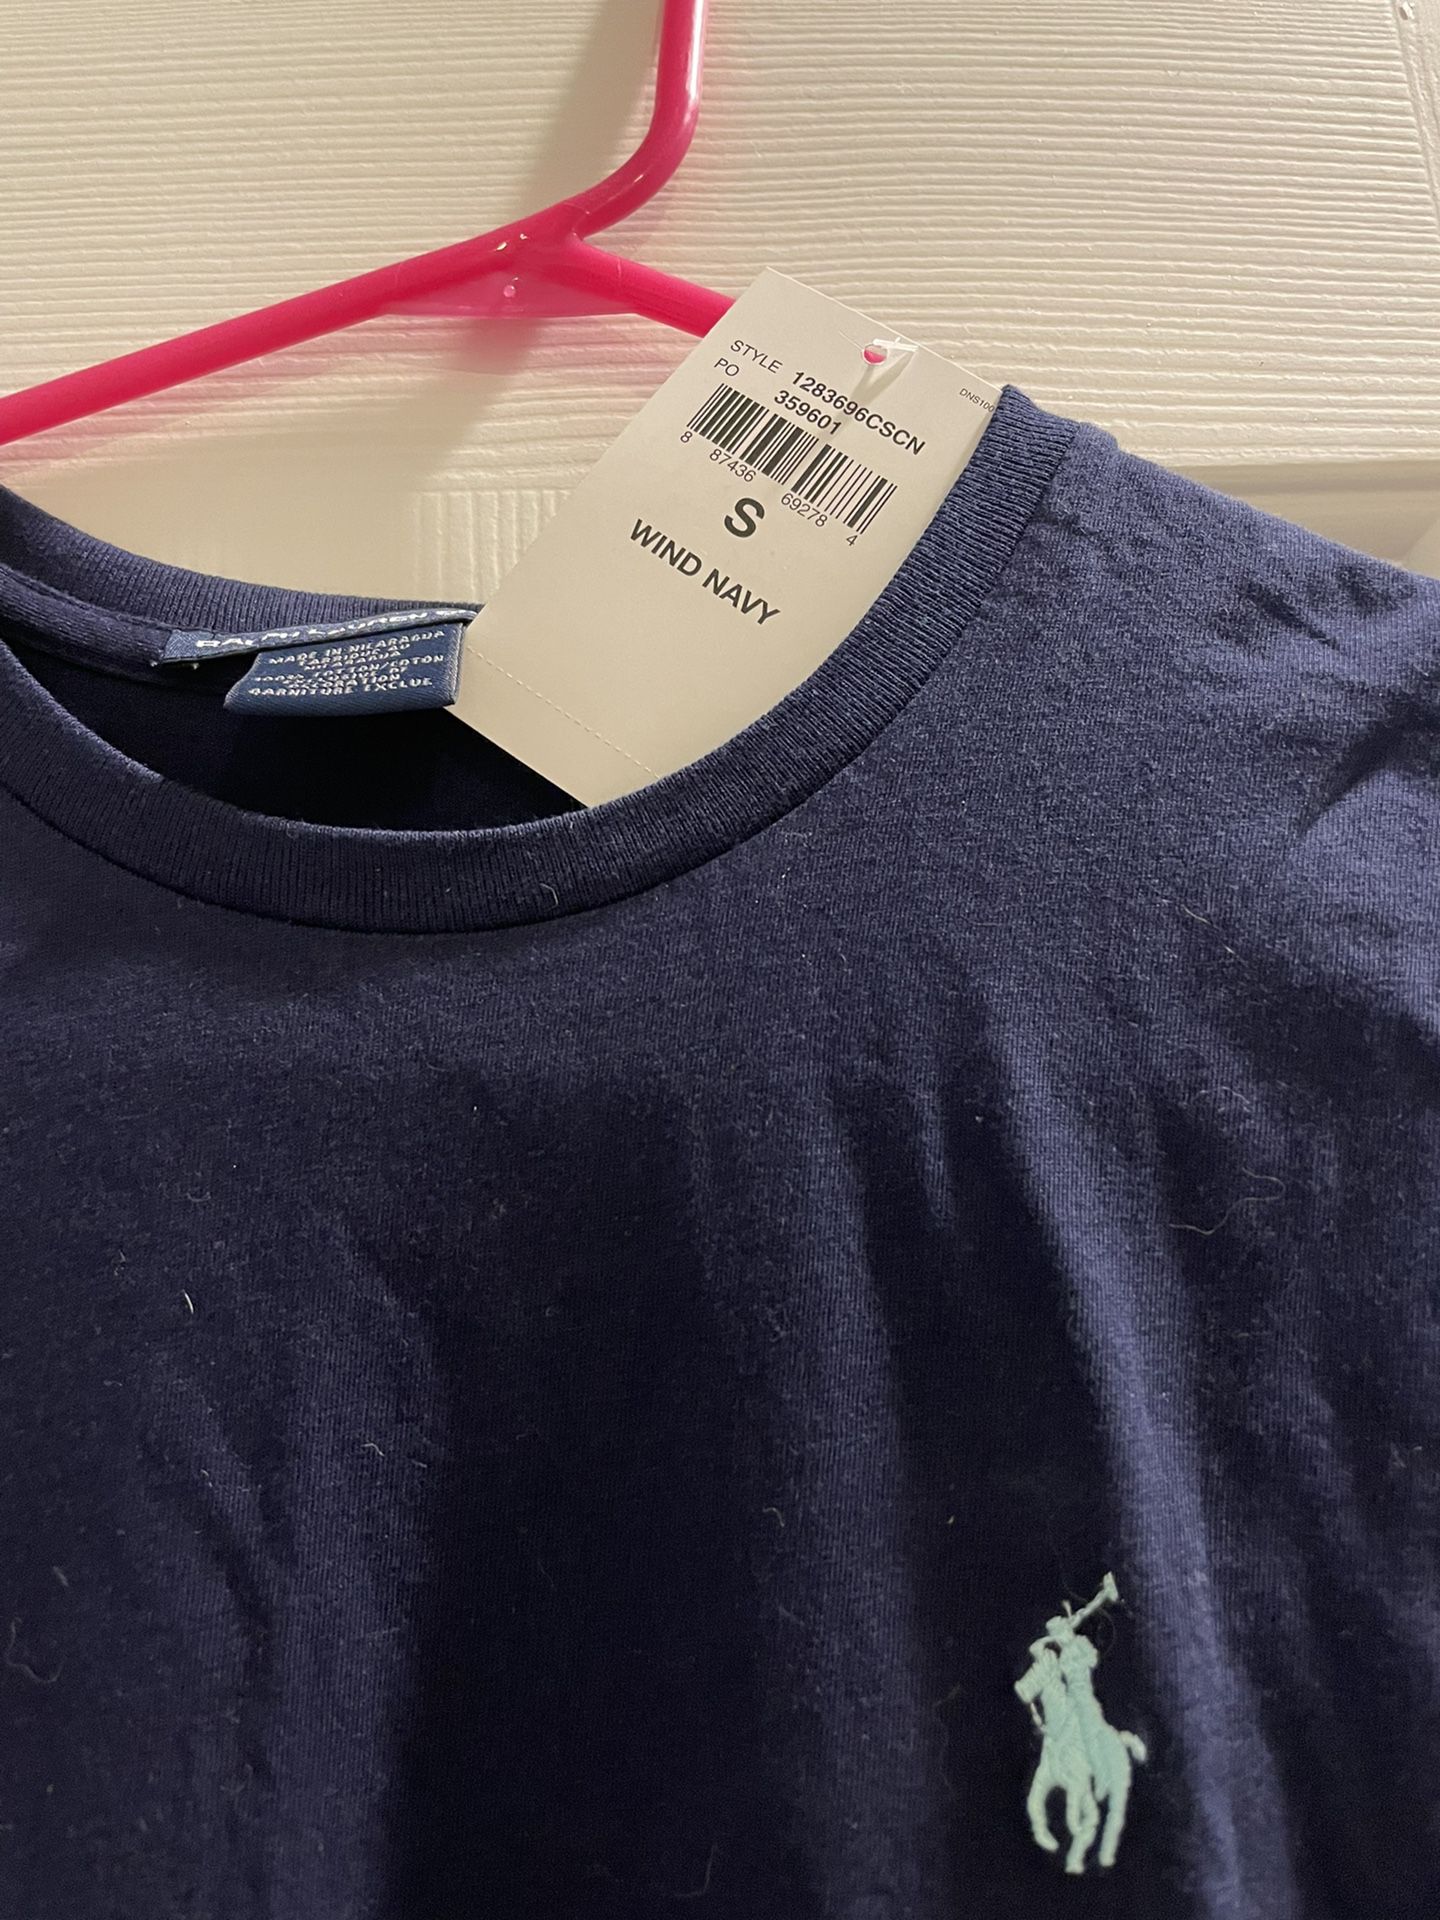 Ralph Lauren Shirt-Brand New Size Small